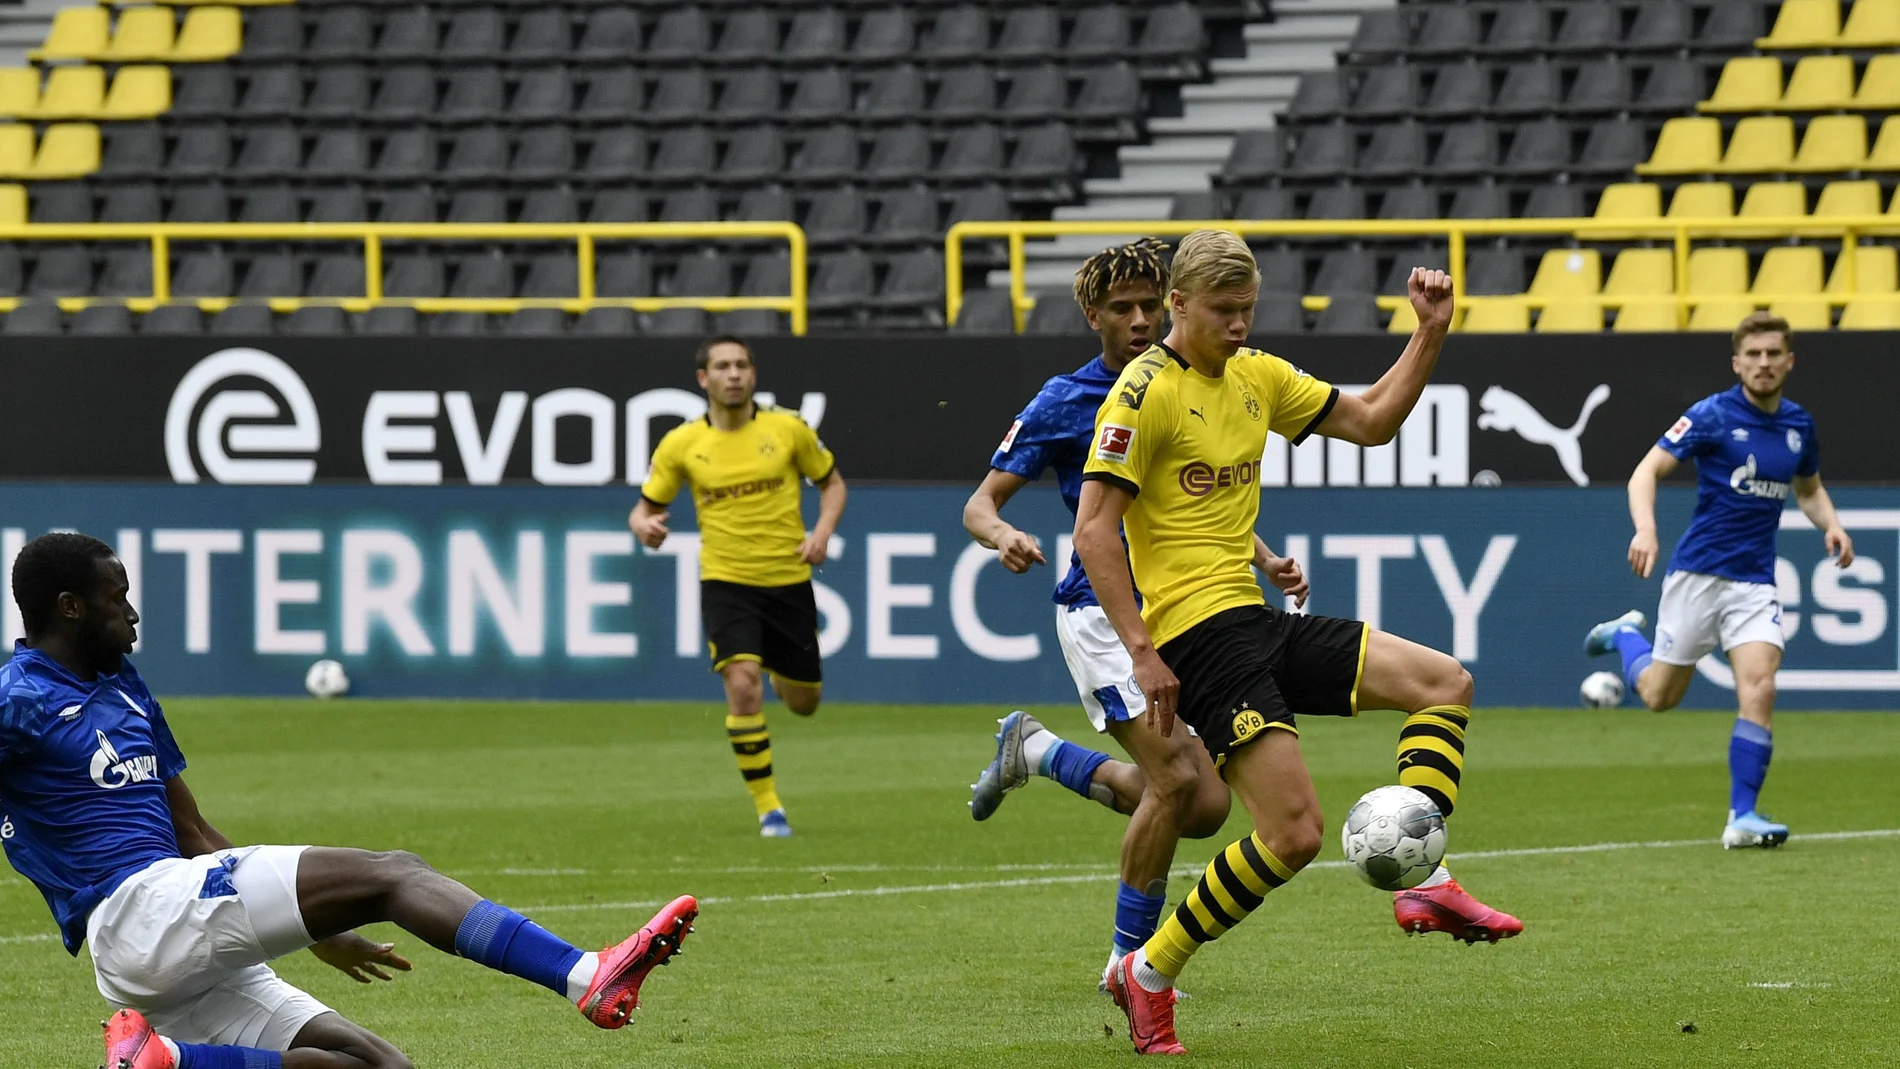 Haaland, delantero del Borussia, en el momento en el que marca el gol al Schalke 04